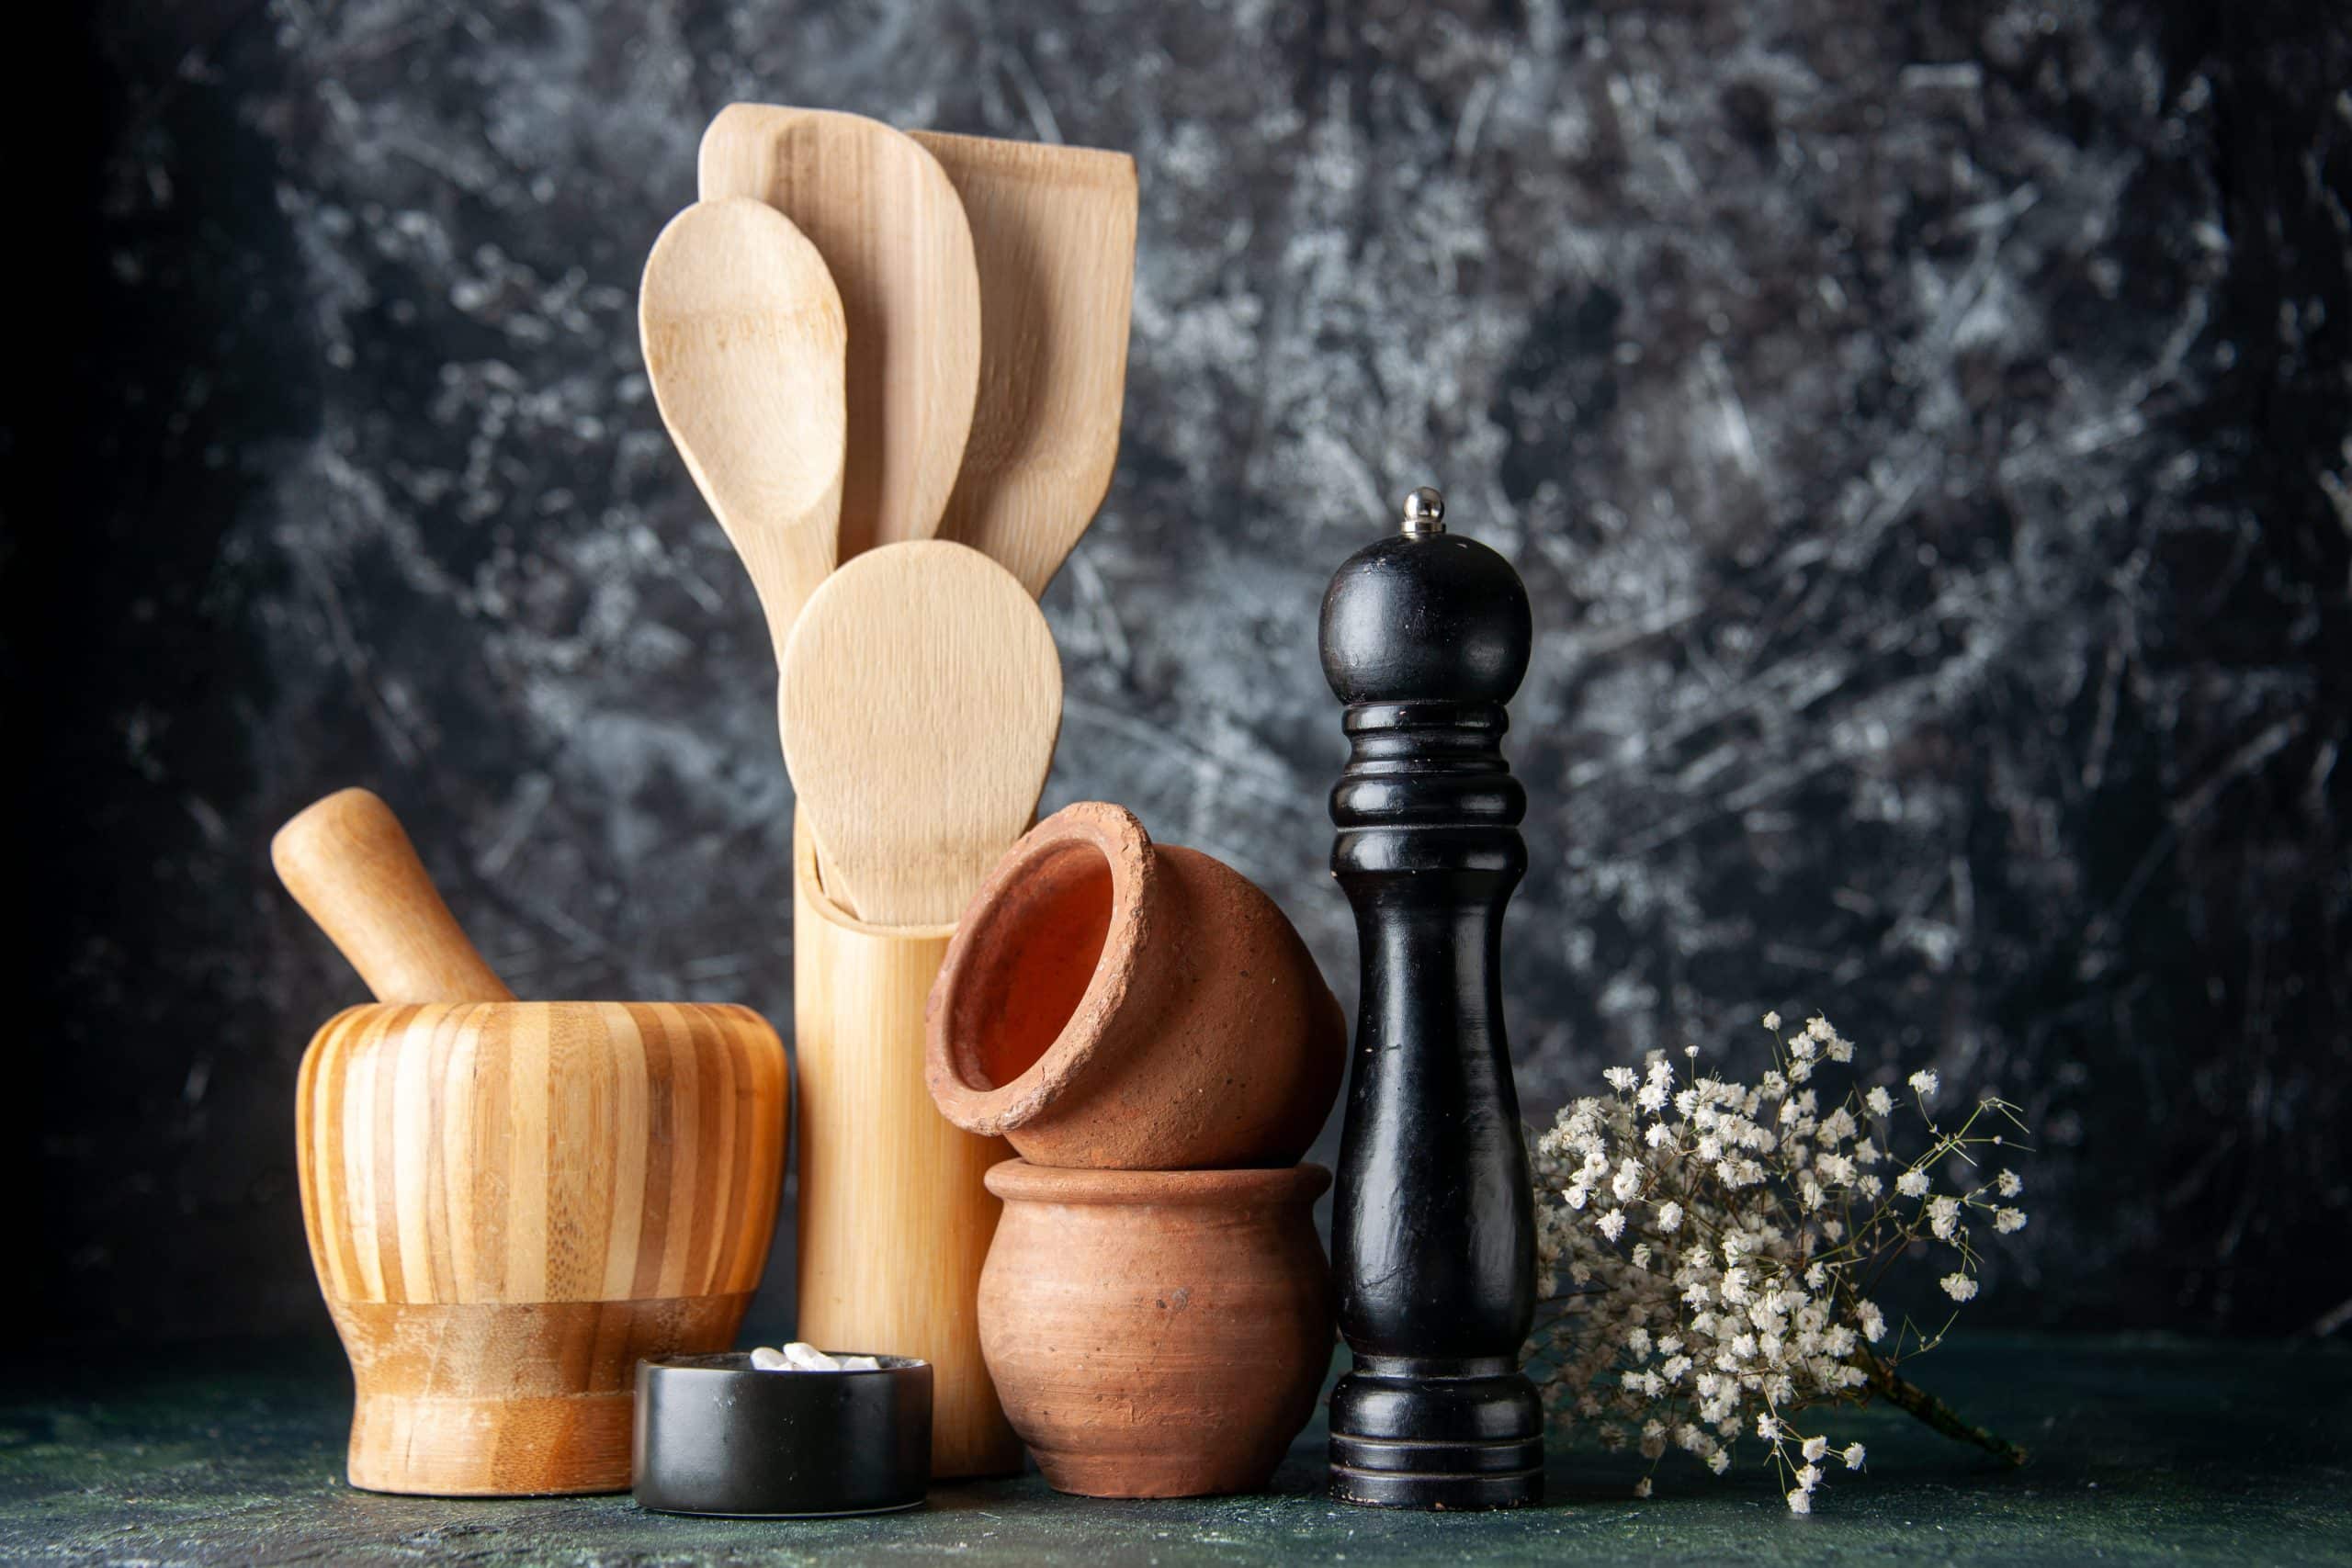 Utensilios de madera en la cocina. En la imagen vemos un conjunto de utensilios de madera: mortero, espátula, cuchara, etc. , con fondo negro.